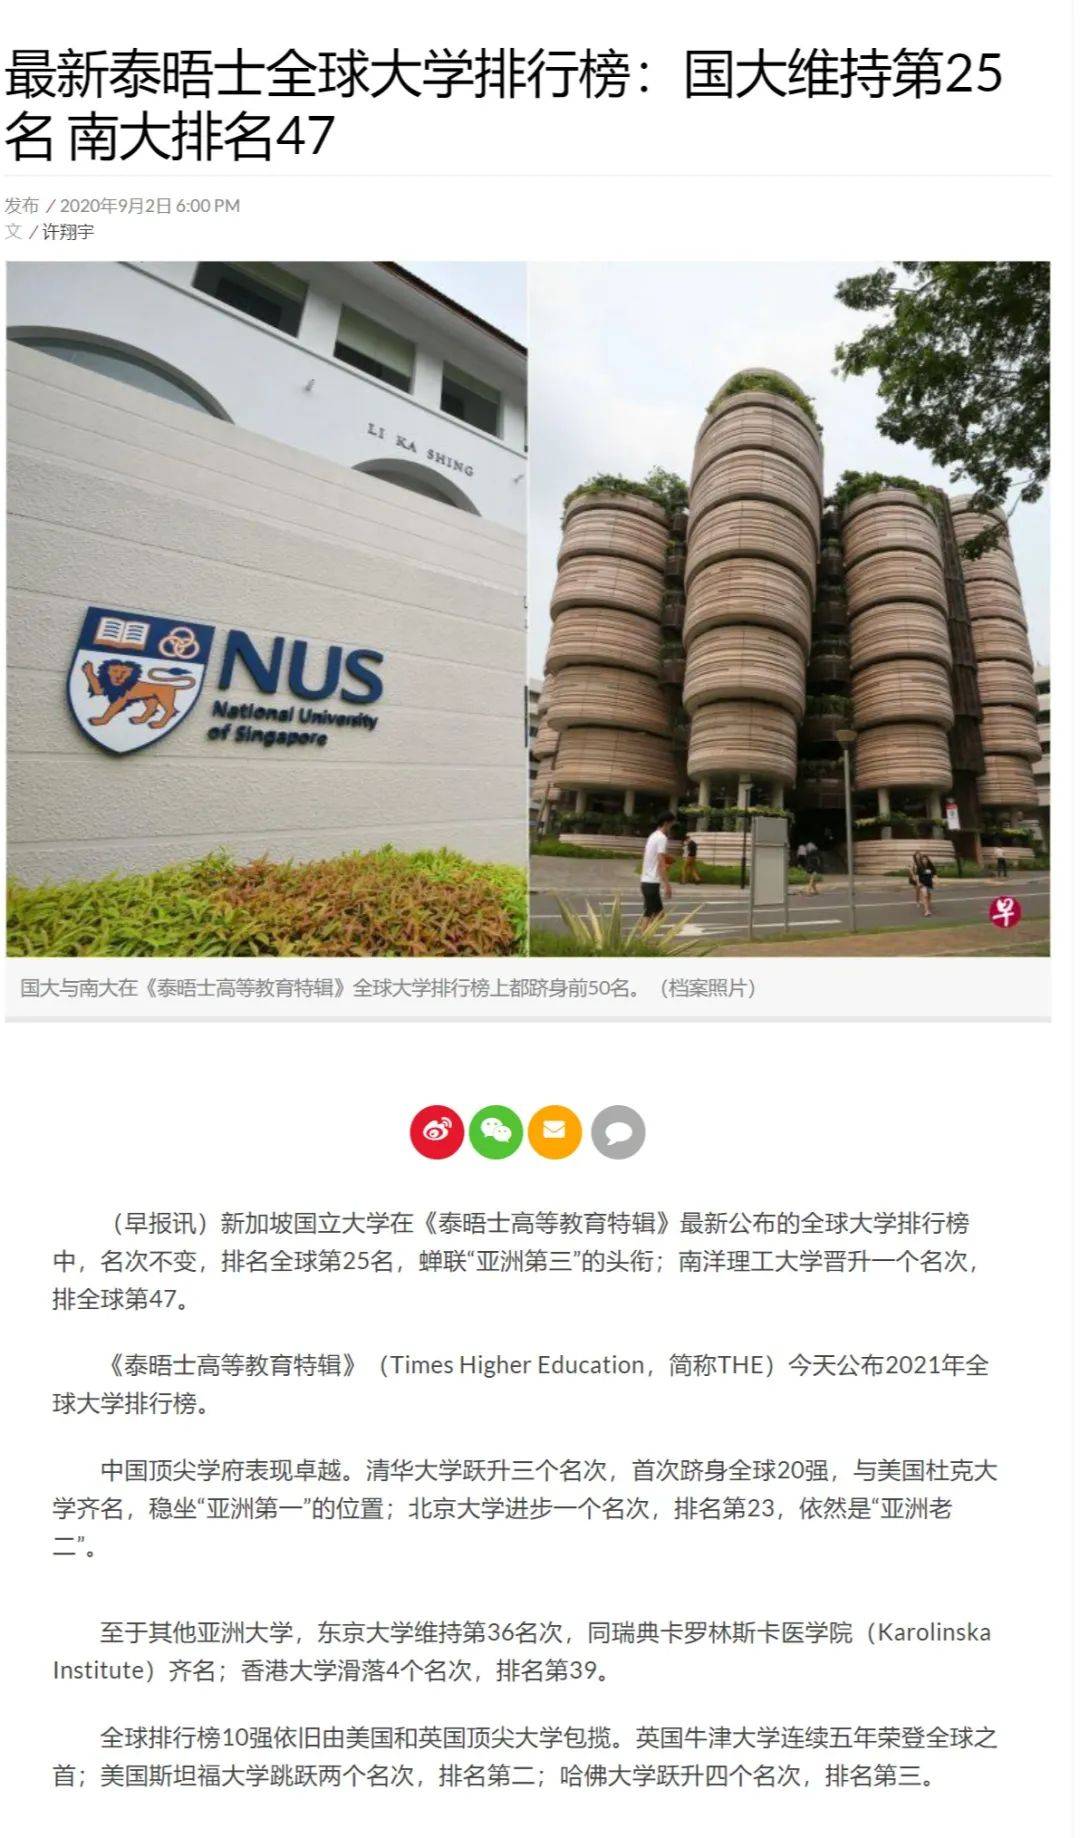 新加坡大學篇 新加坡國立大學